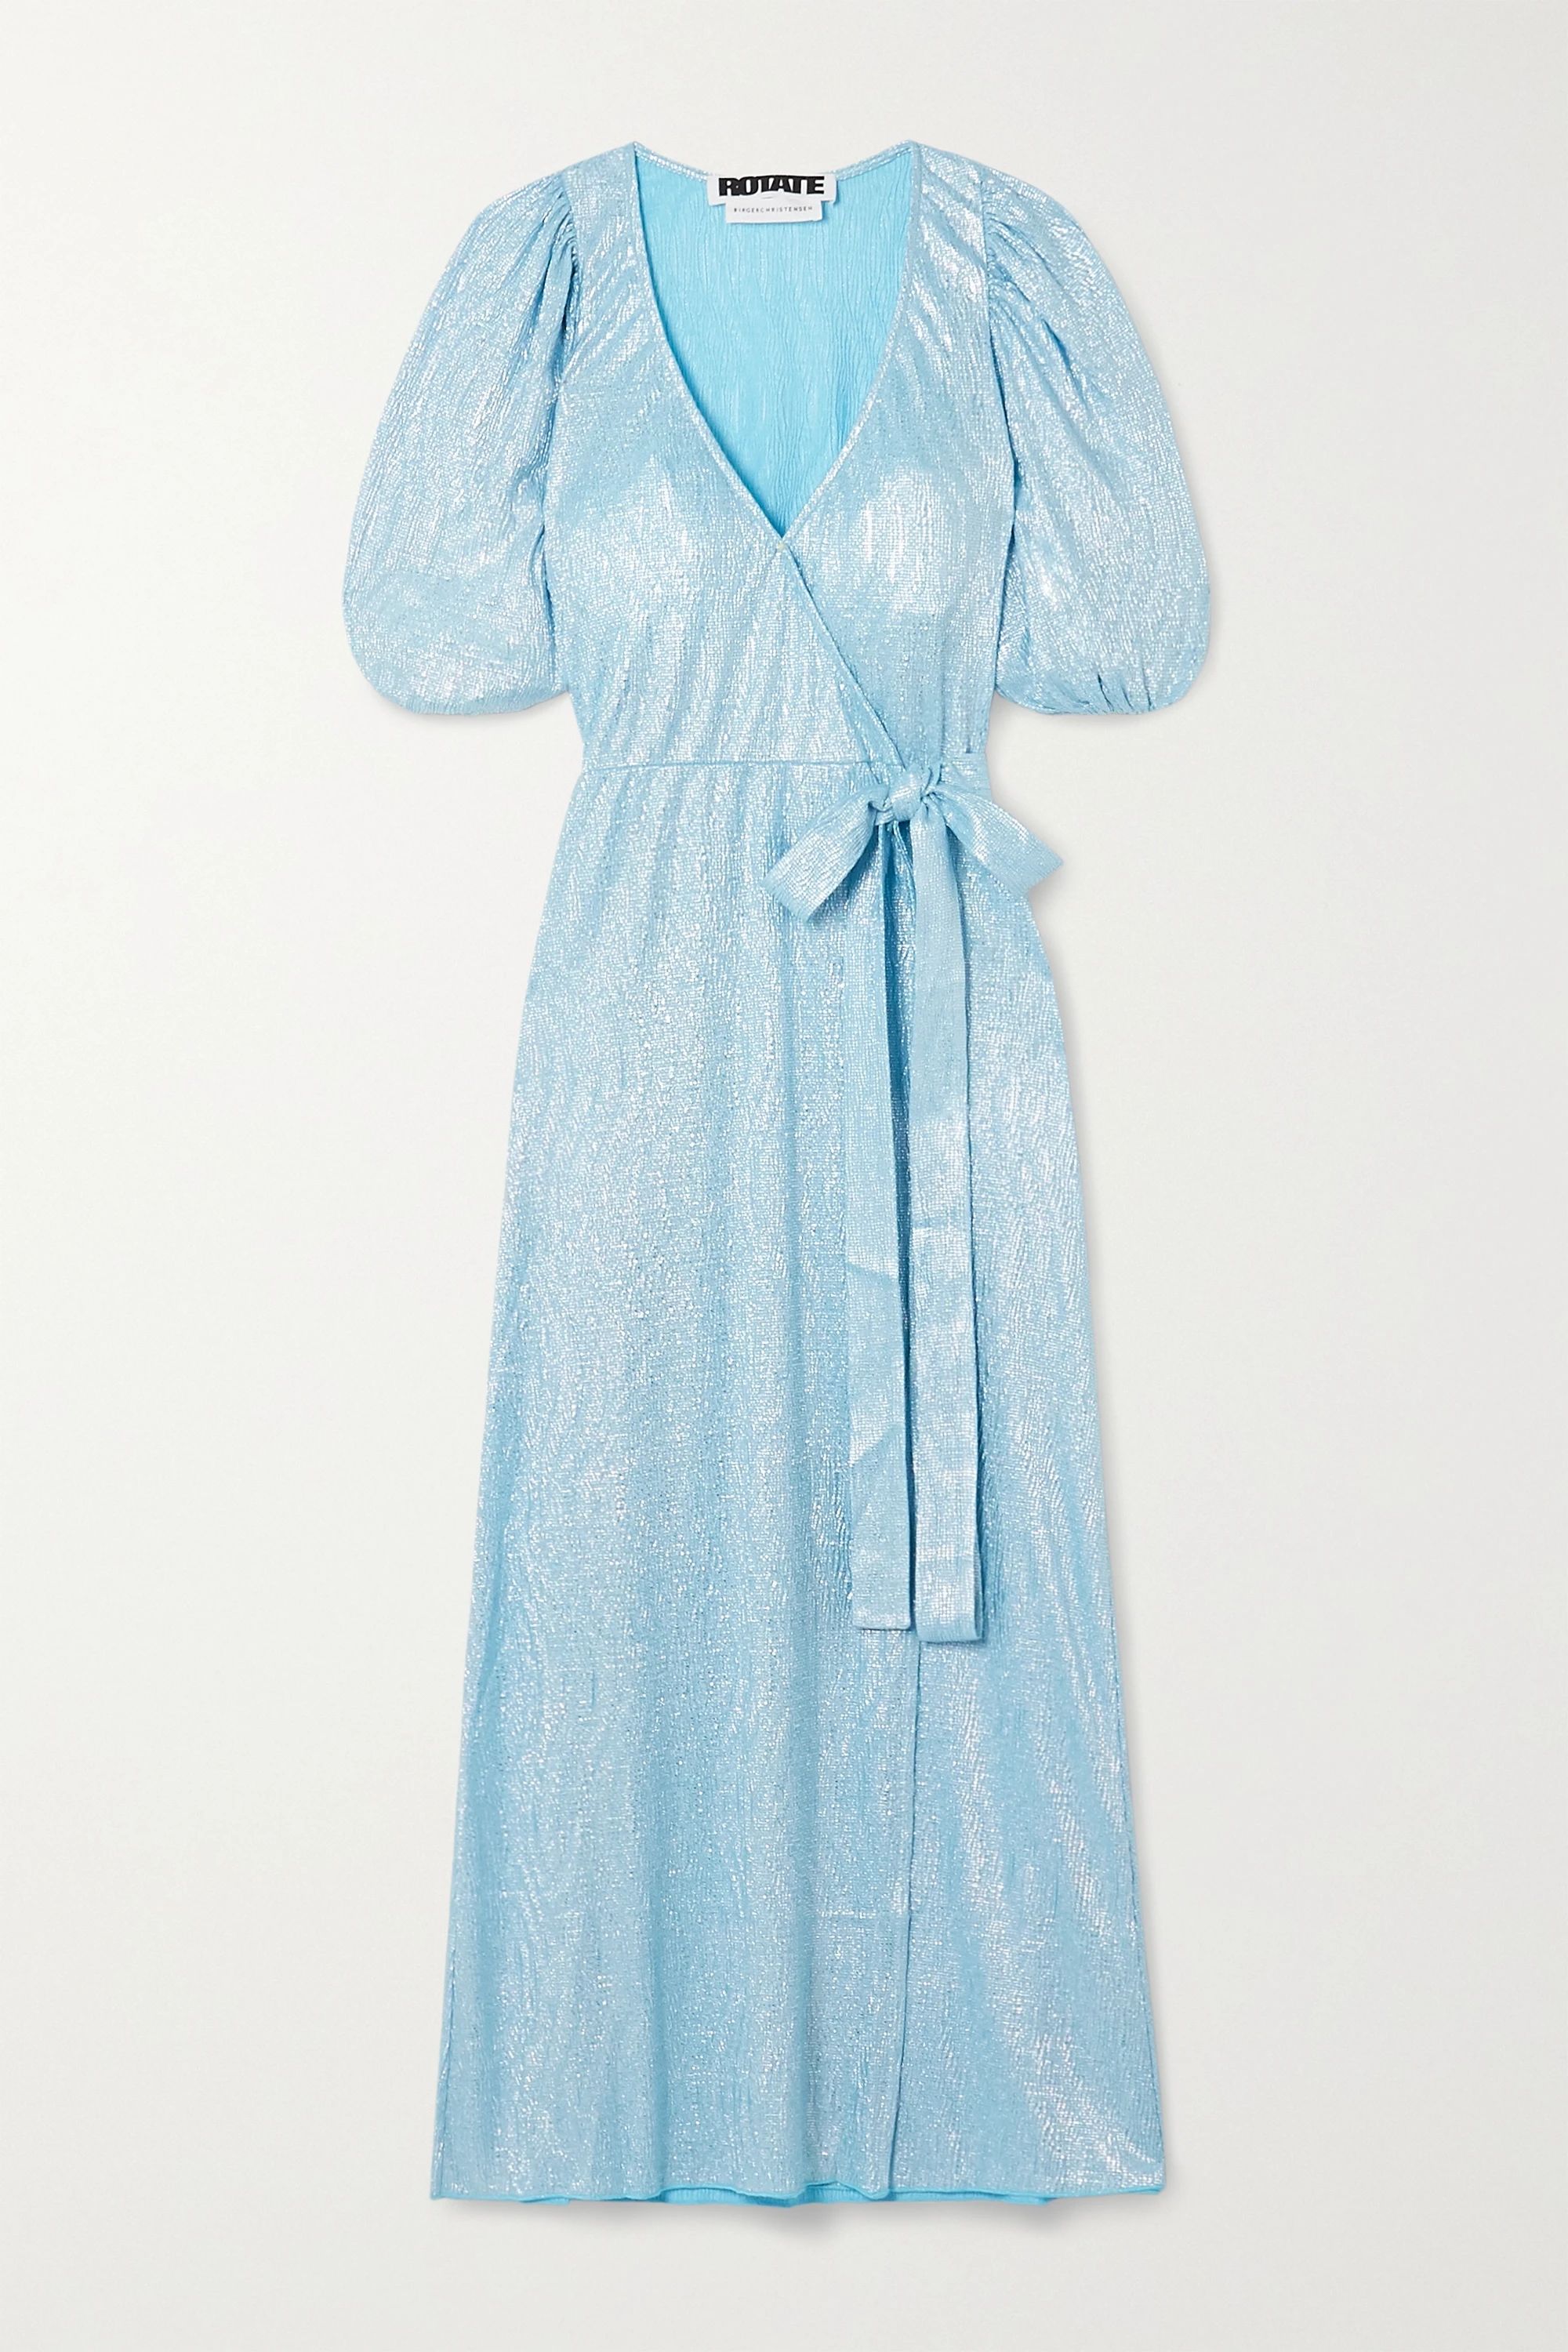 Sky blue Frida metallic textured-jersey wrap dress | ROTATE Birger Christensen | NET-A-PORTER | NET-A-PORTER (US)